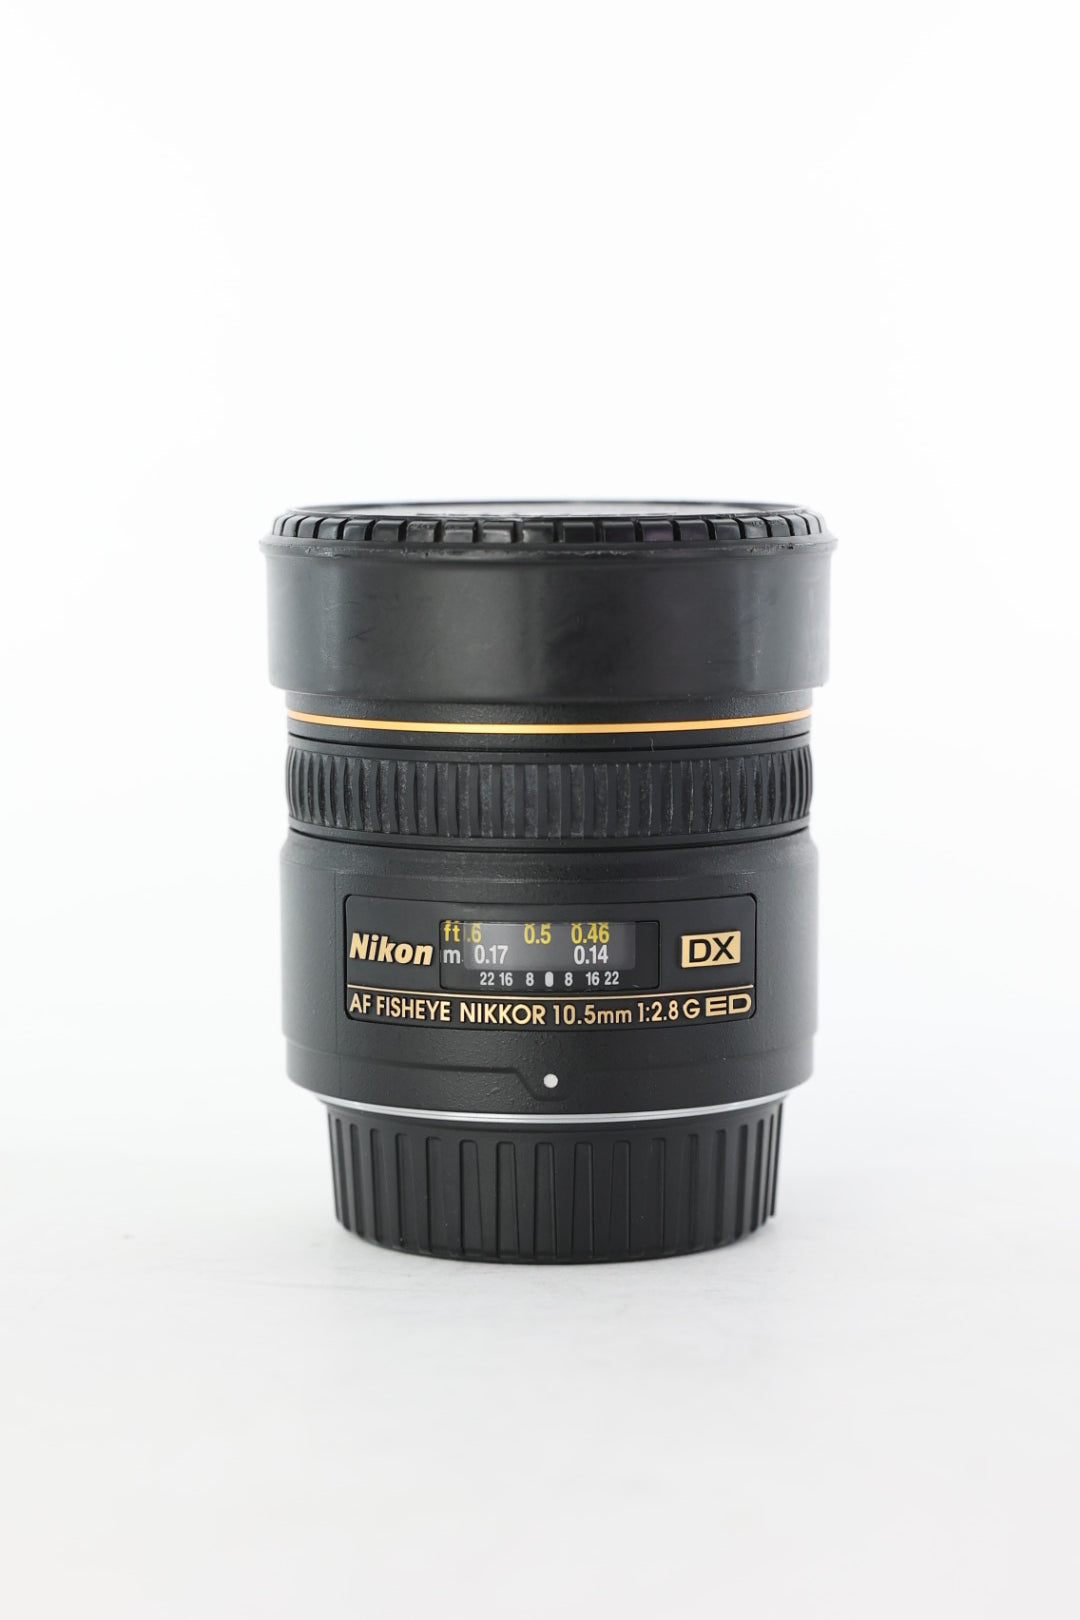 Nikon AF10.5/2.8GED/13935 AF 10.5mm f/2.8G ED Fisheye, Used